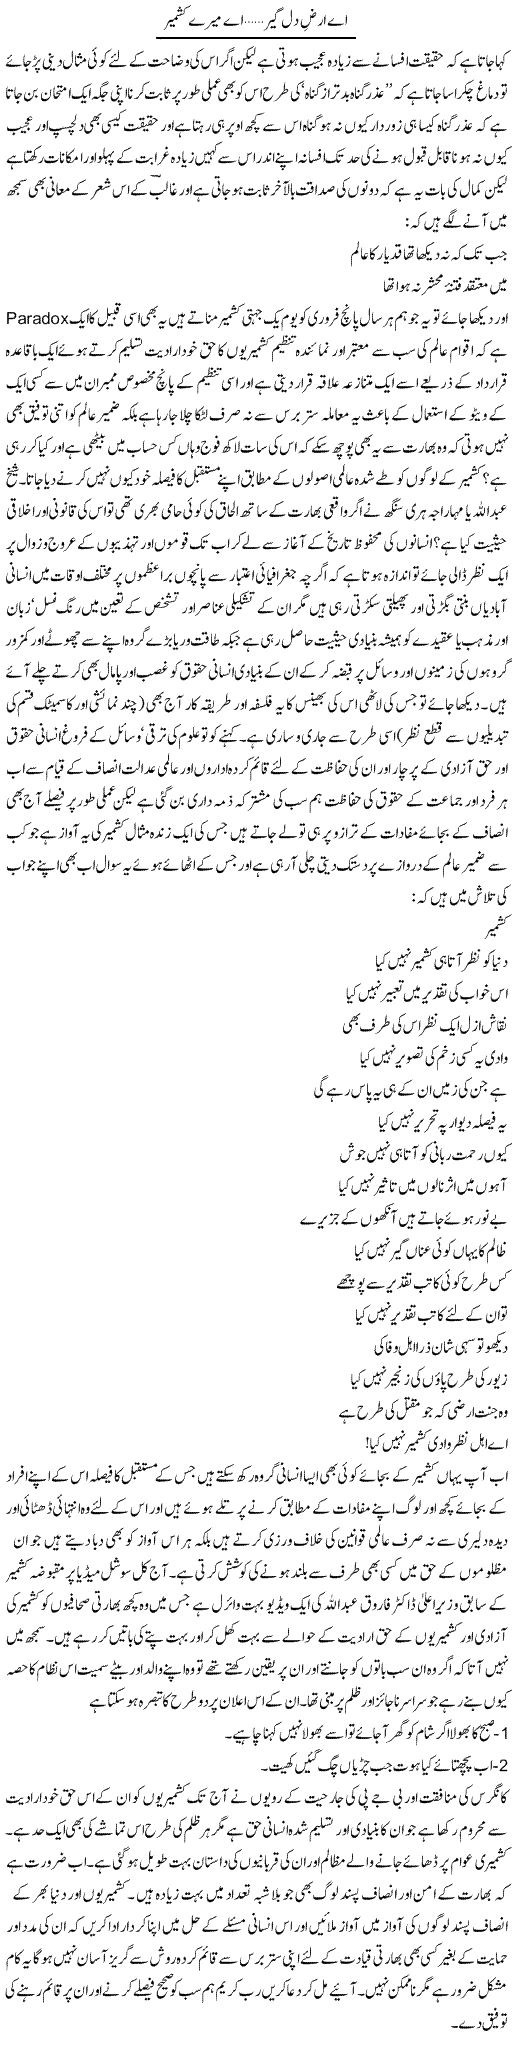 Ae Arz Dil Geer, Ae Mere Kashmir | Amjad Islam Amjad | Daily Urdu Columns